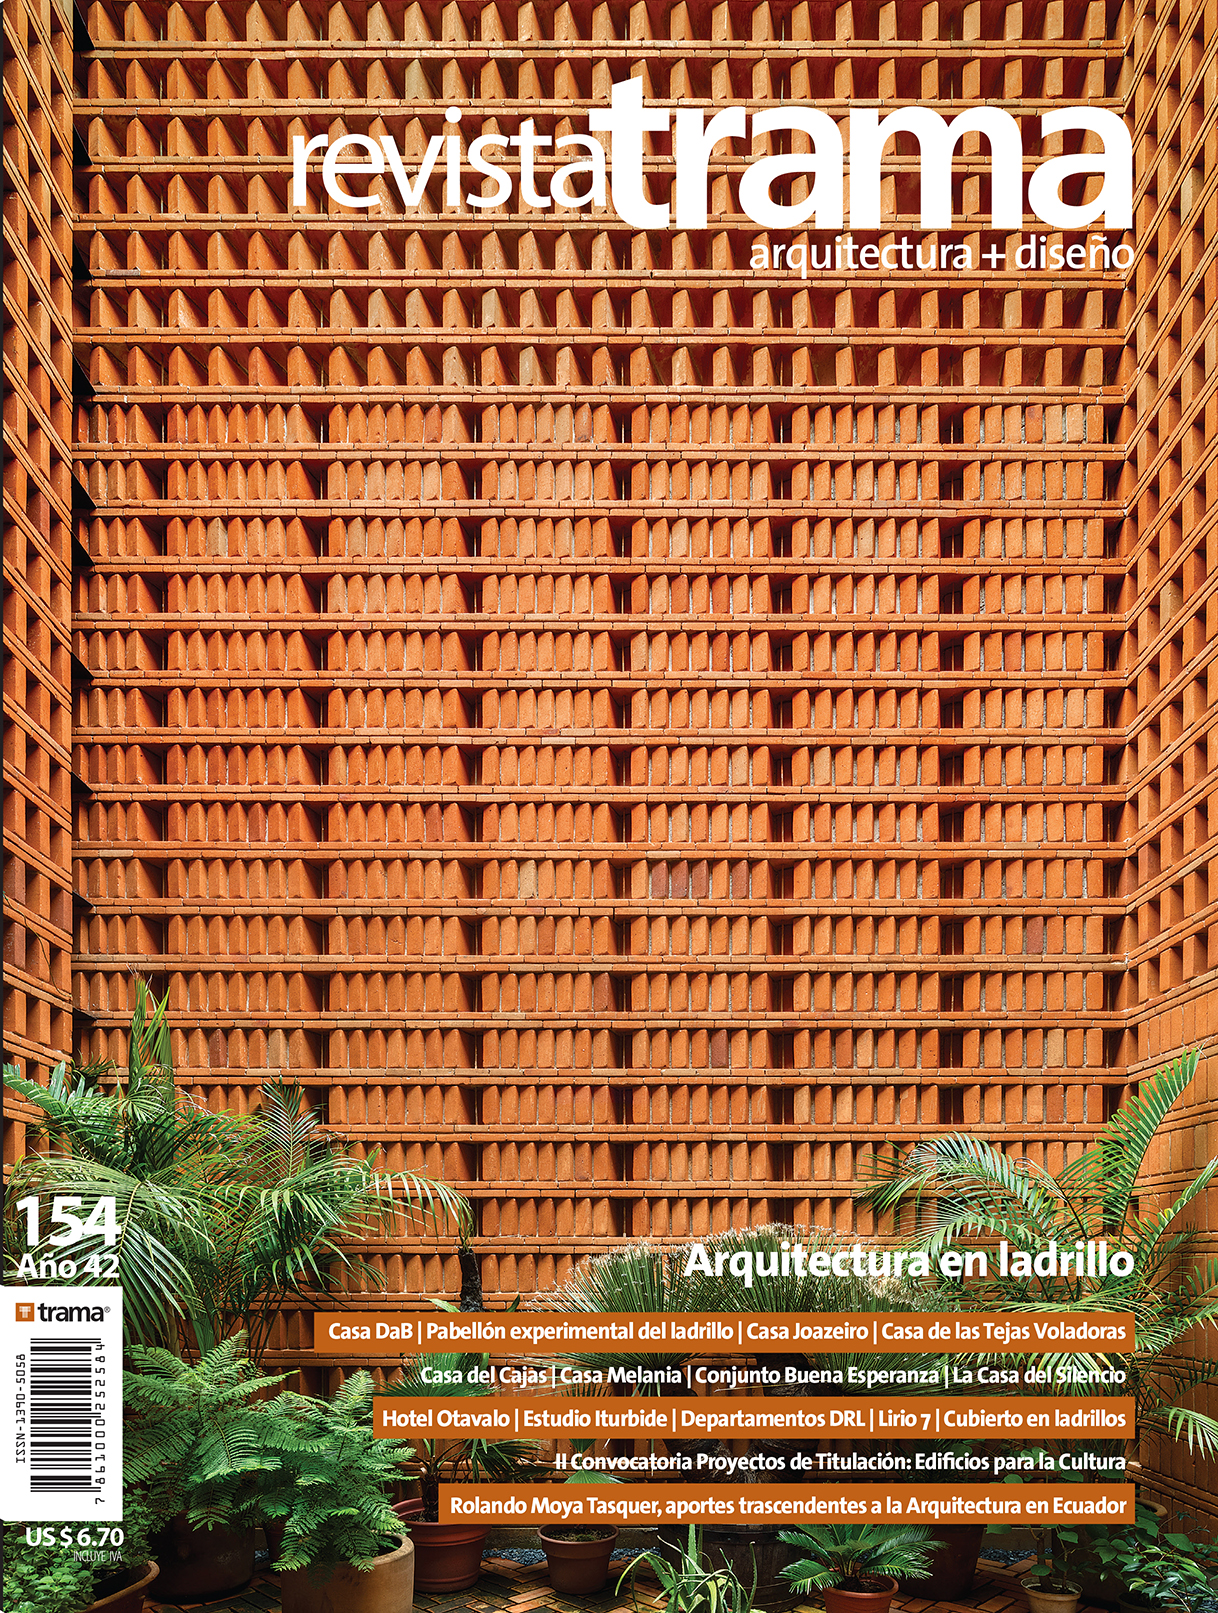 Trama 154: Arquitectura en ladrillo + revista Plus +: Praxis